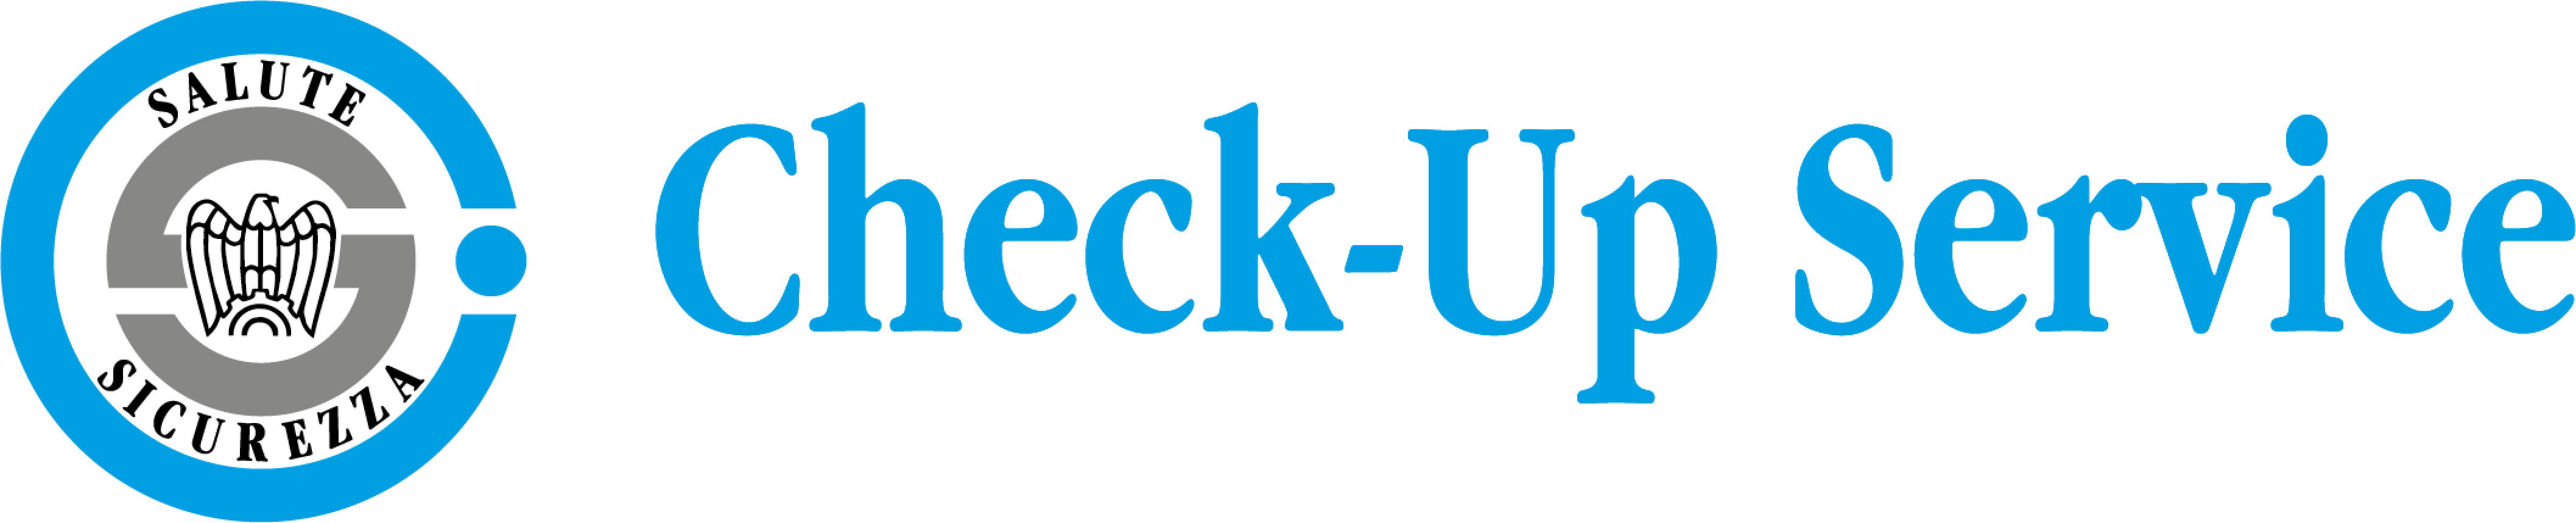 logo Check-Up services